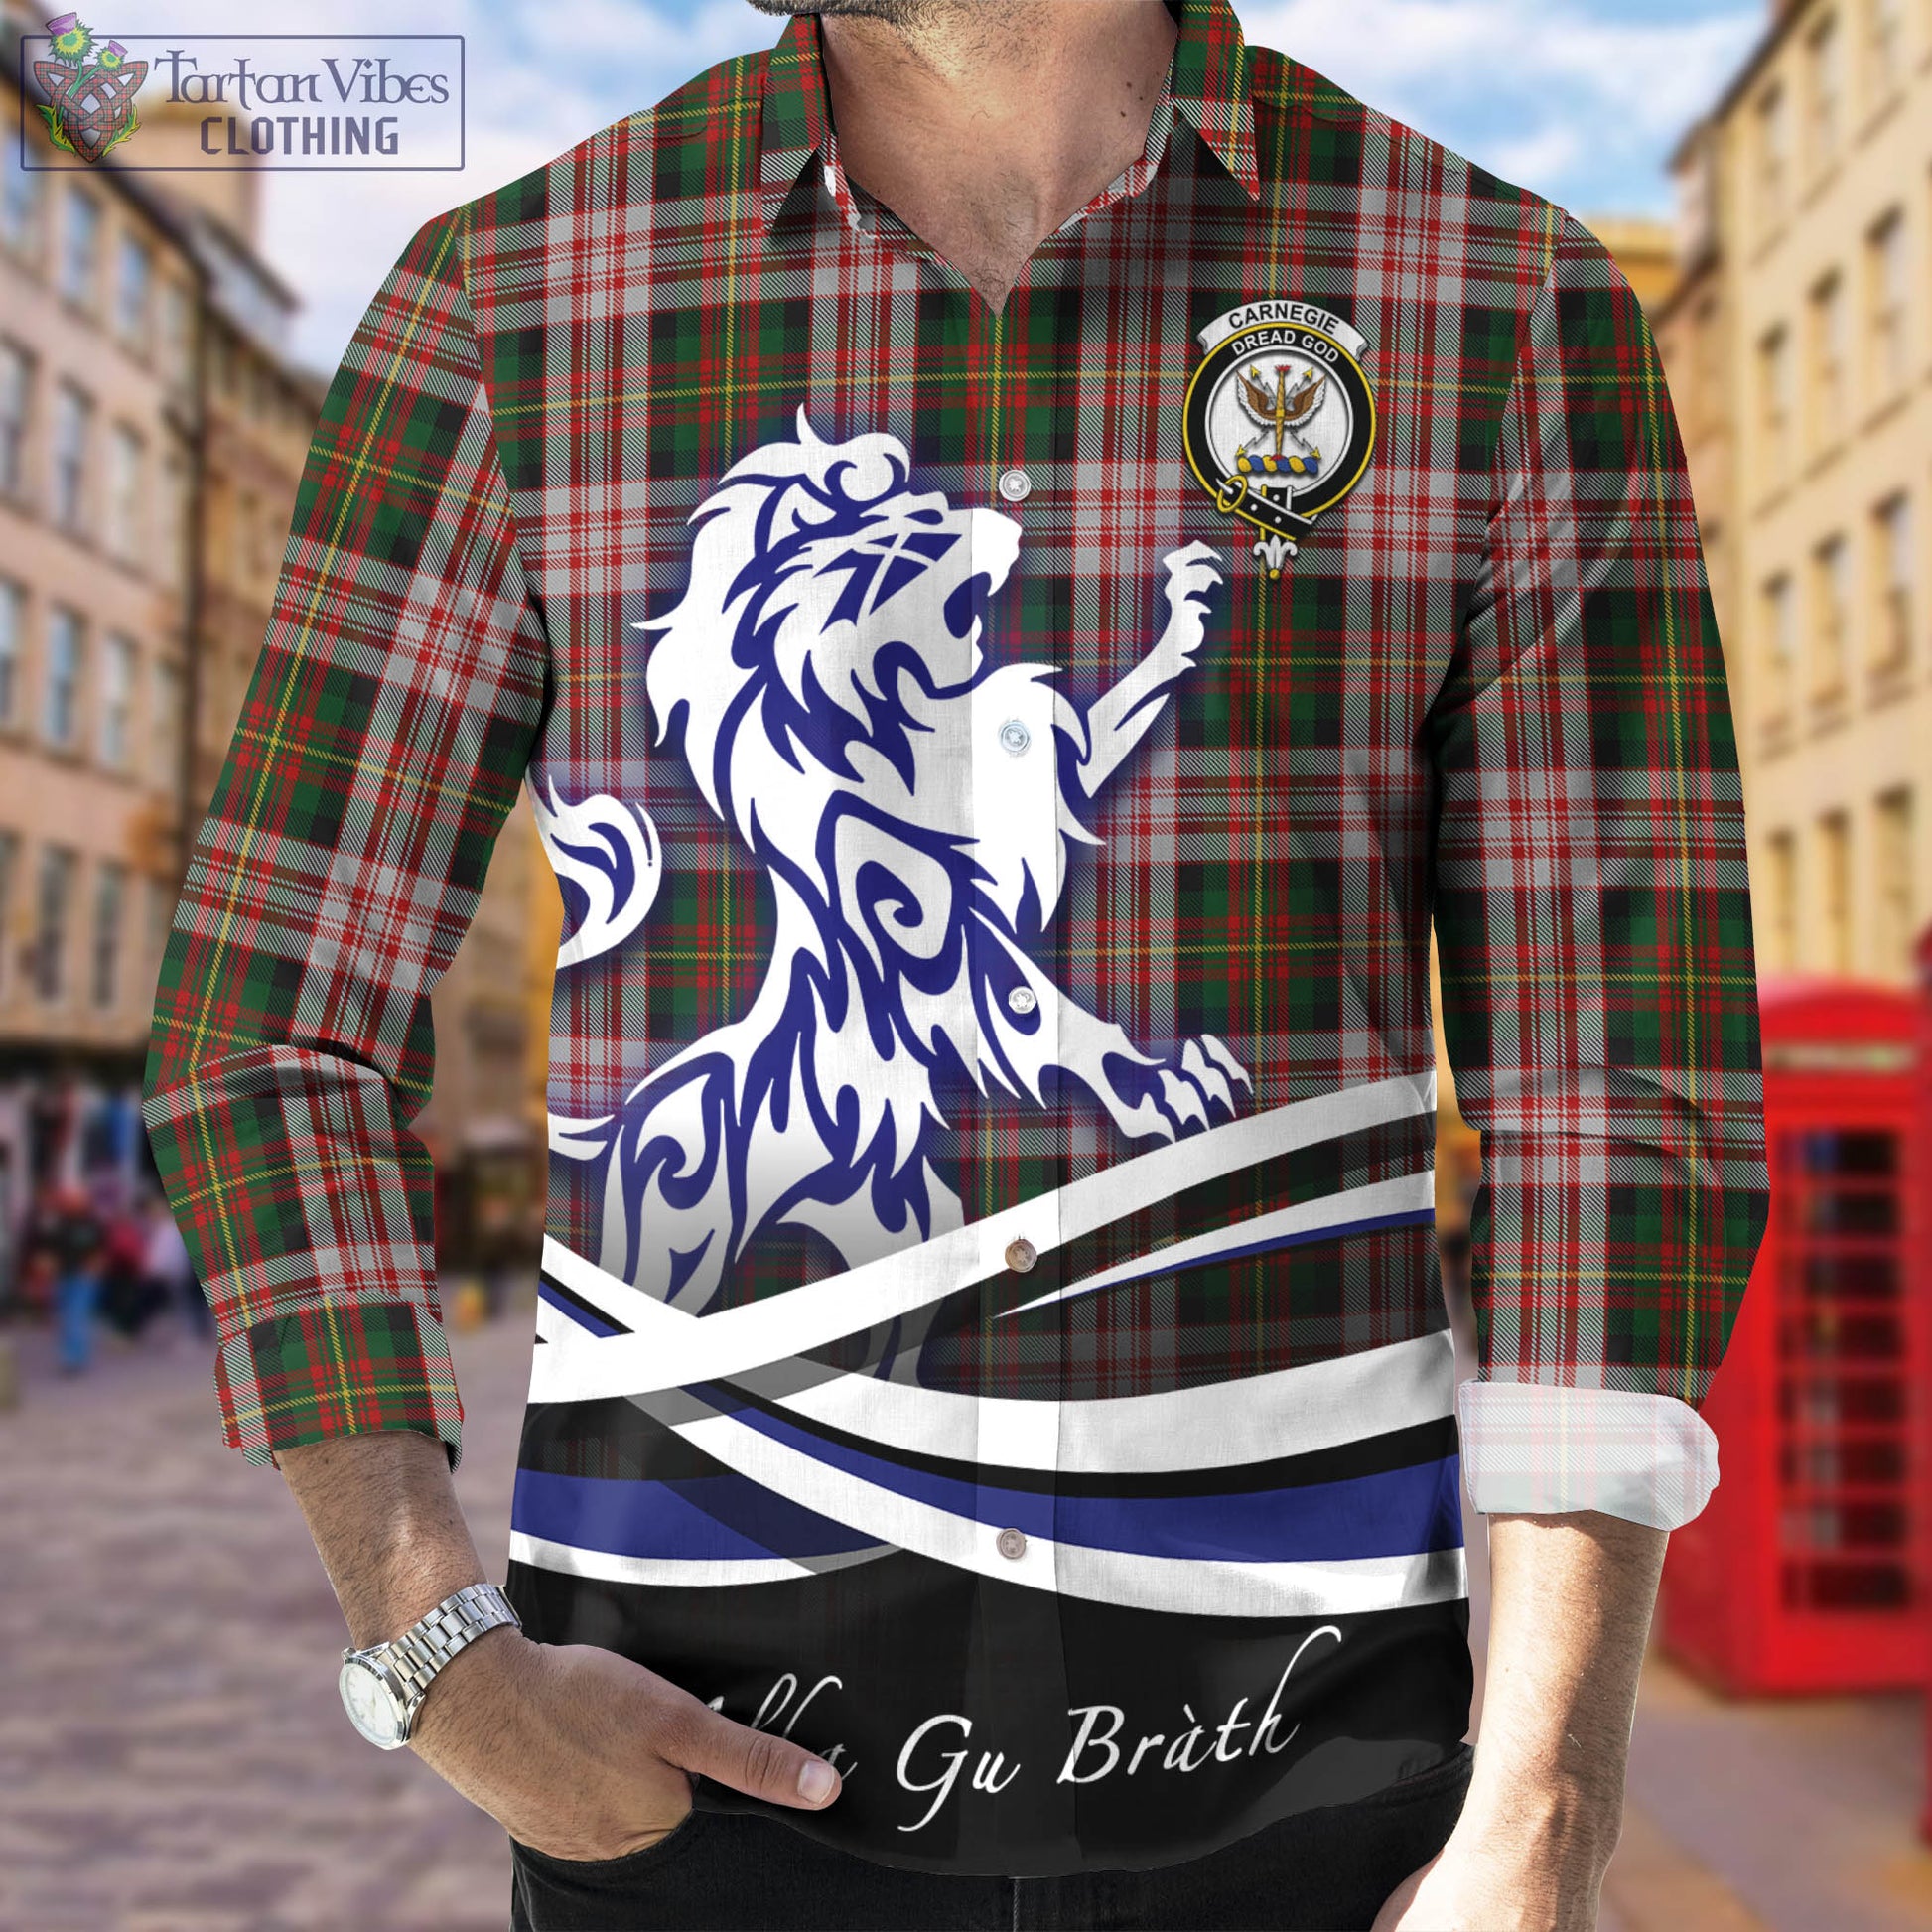 carnegie-dress-tartan-long-sleeve-button-up-shirt-with-alba-gu-brath-regal-lion-emblem